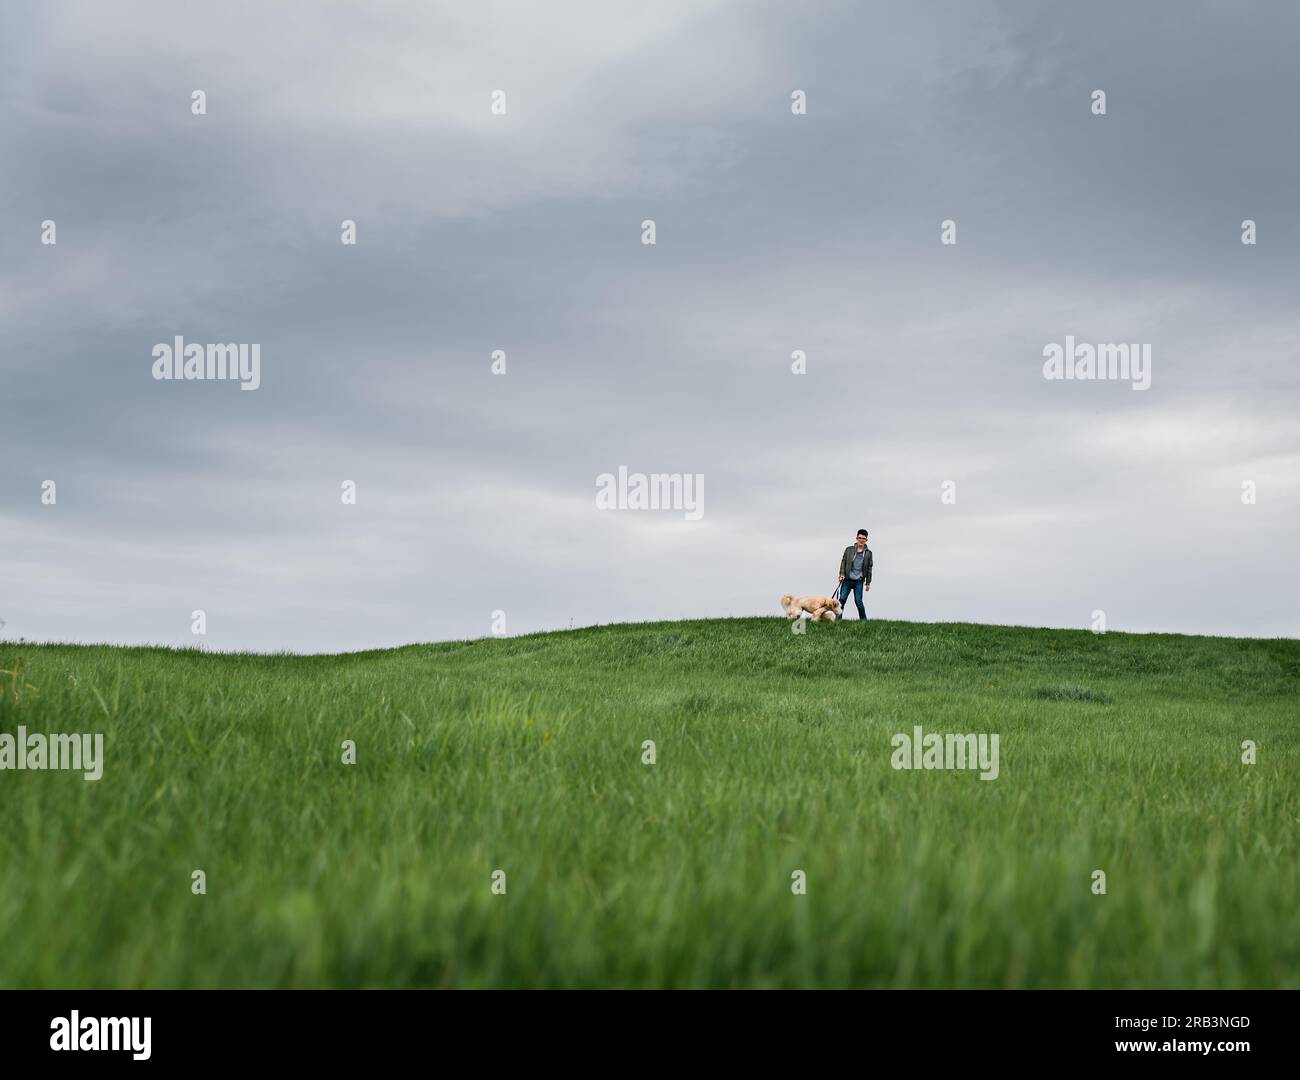 Der Junge und sein Hund stehen weit weg auf einem Grashügel an einem bewölkten Tag. Stockfoto